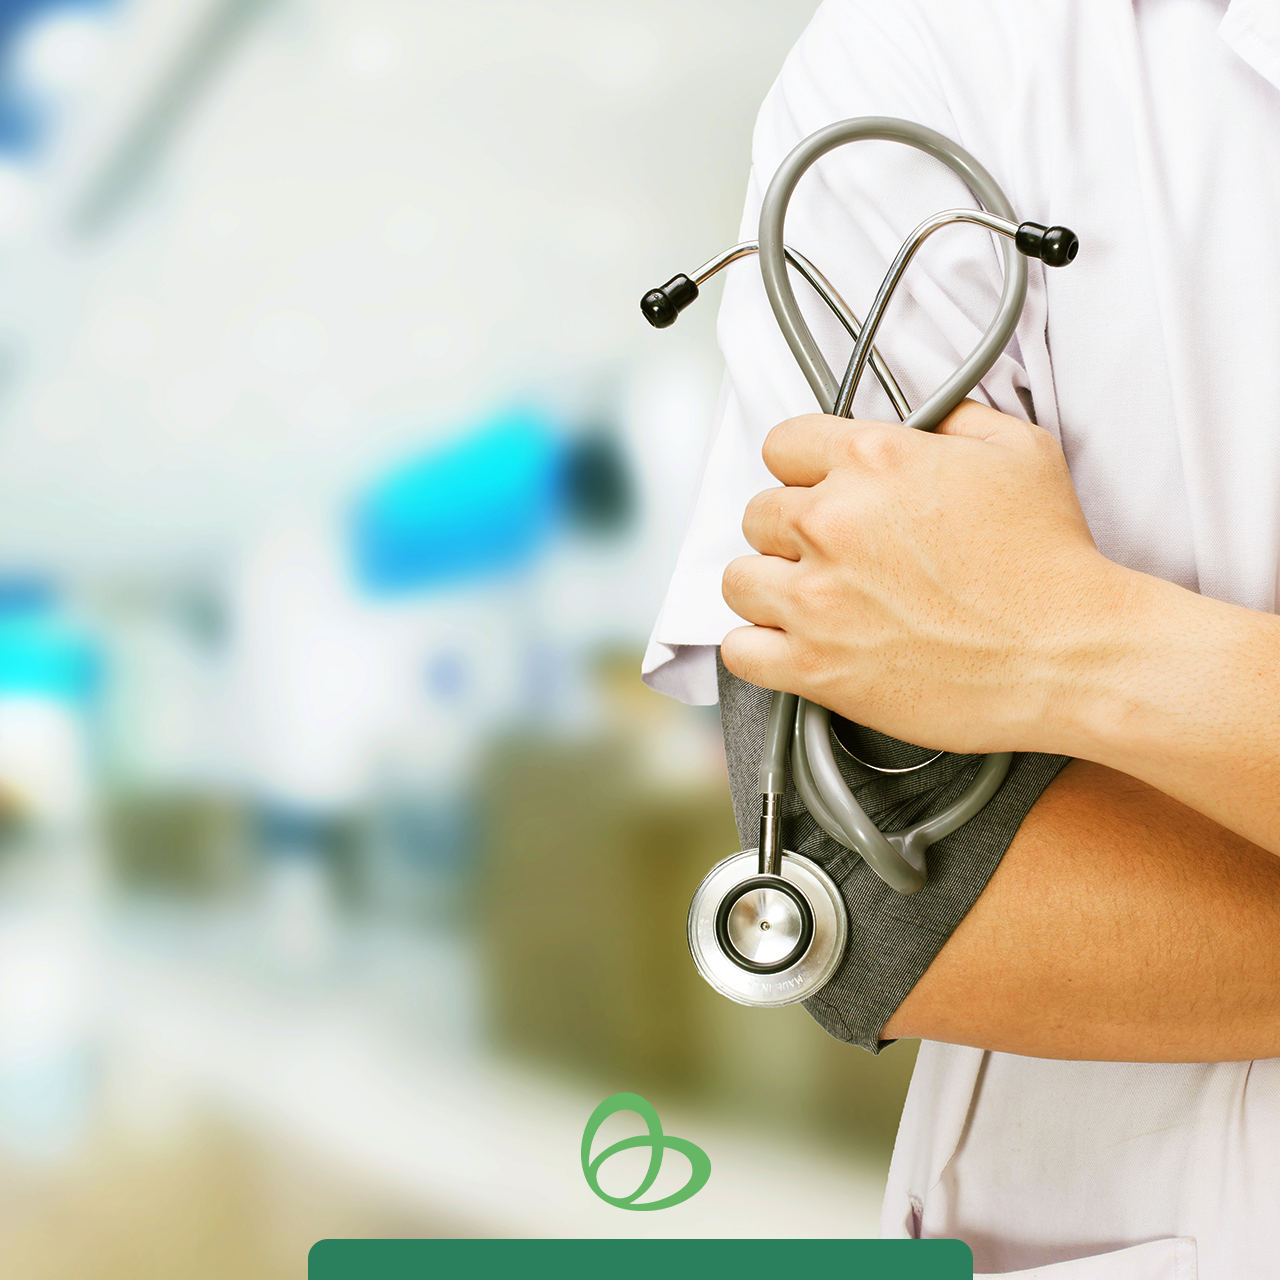 Coberturas em planos de saúde variam entre ambulatorial, hospitalar, hospitalar com obstetrícia, odontológico e plano referência, entre outras combinações.